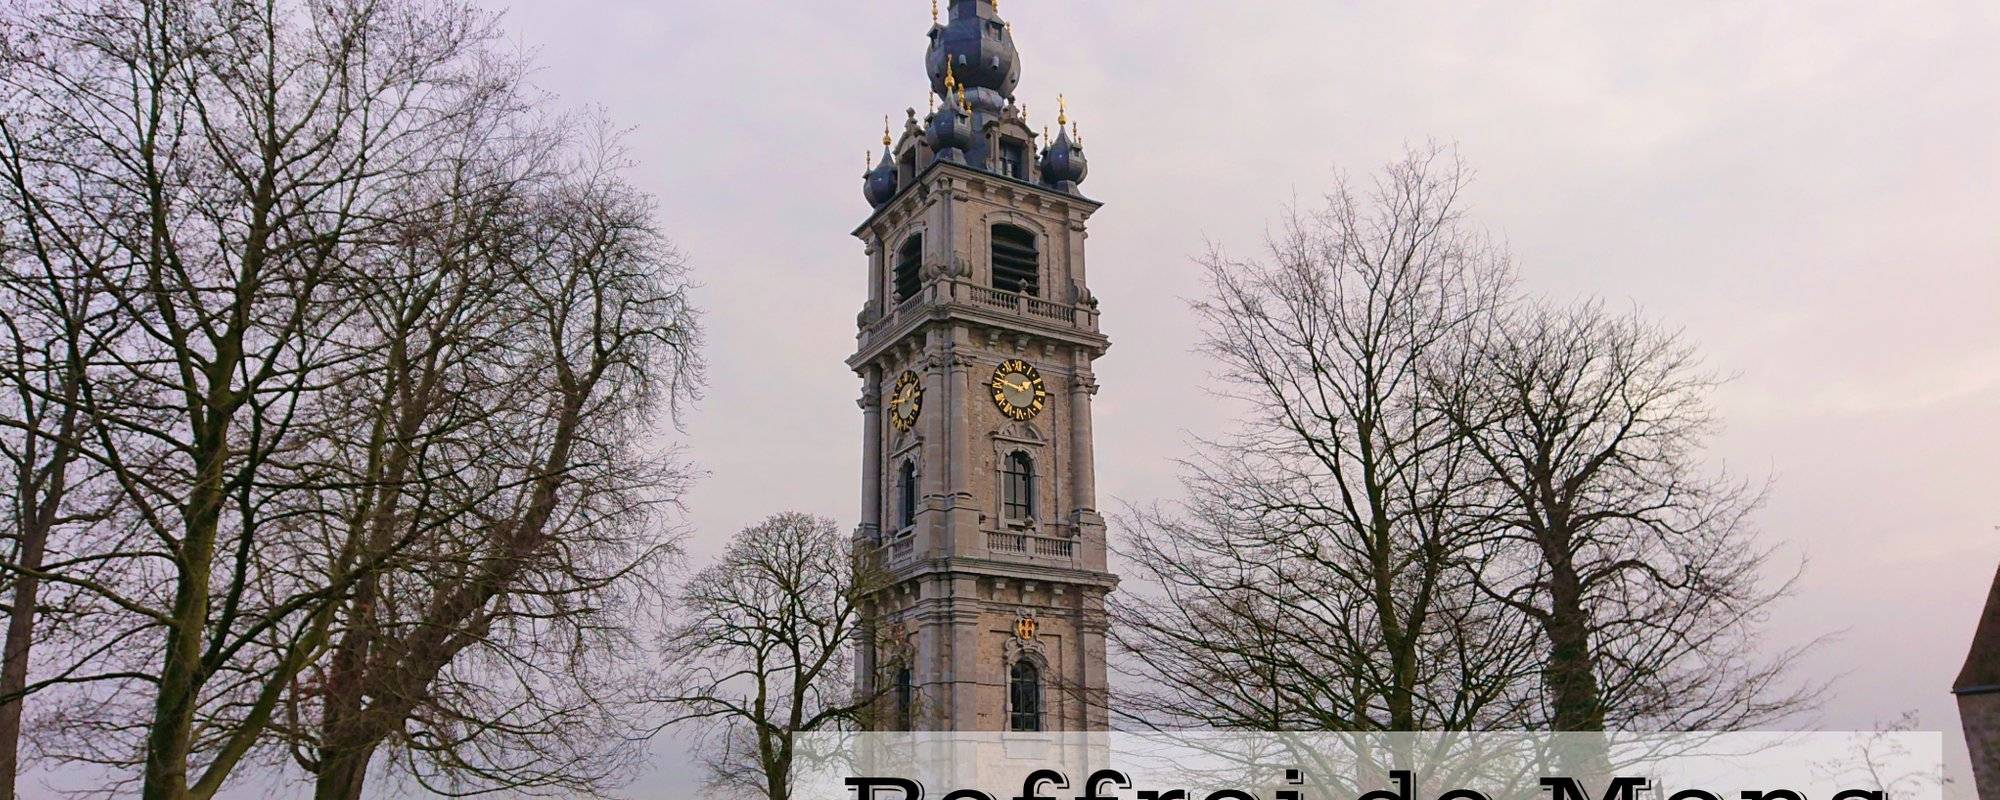 Belfry of Mons